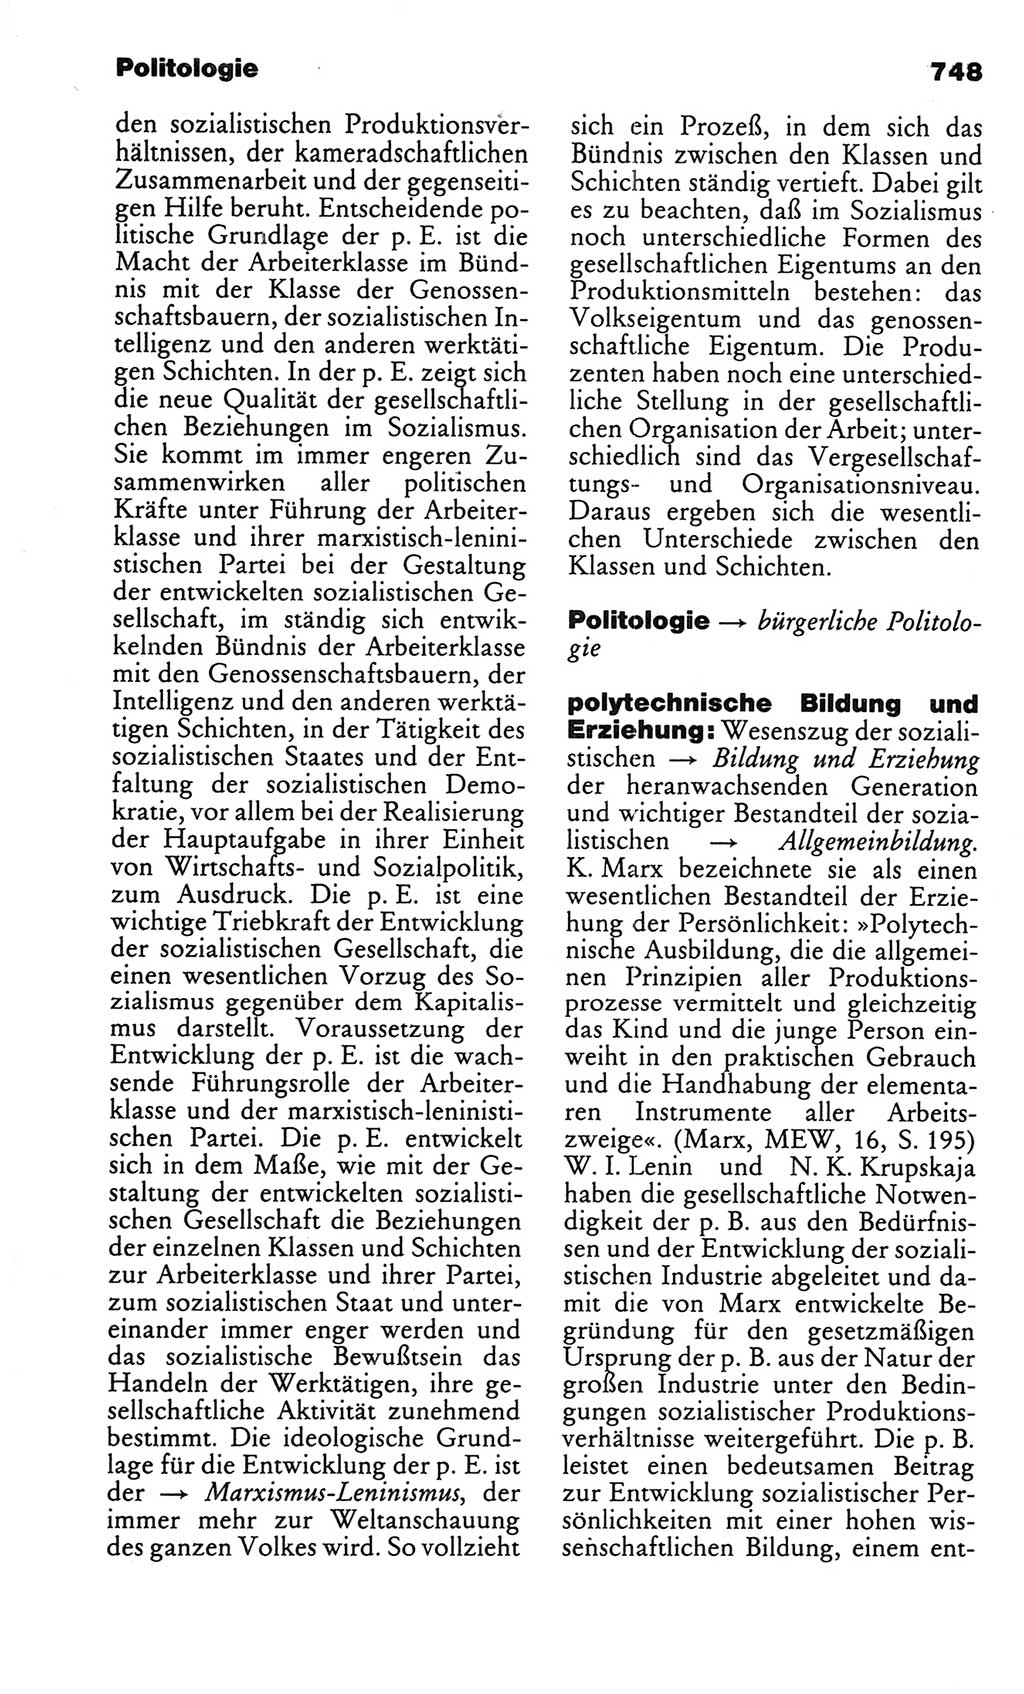 Kleines politisches Wörterbuch [Deutsche Demokratische Republik (DDR)] 1986, Seite 748 (Kl. pol. Wb. DDR 1986, S. 748)